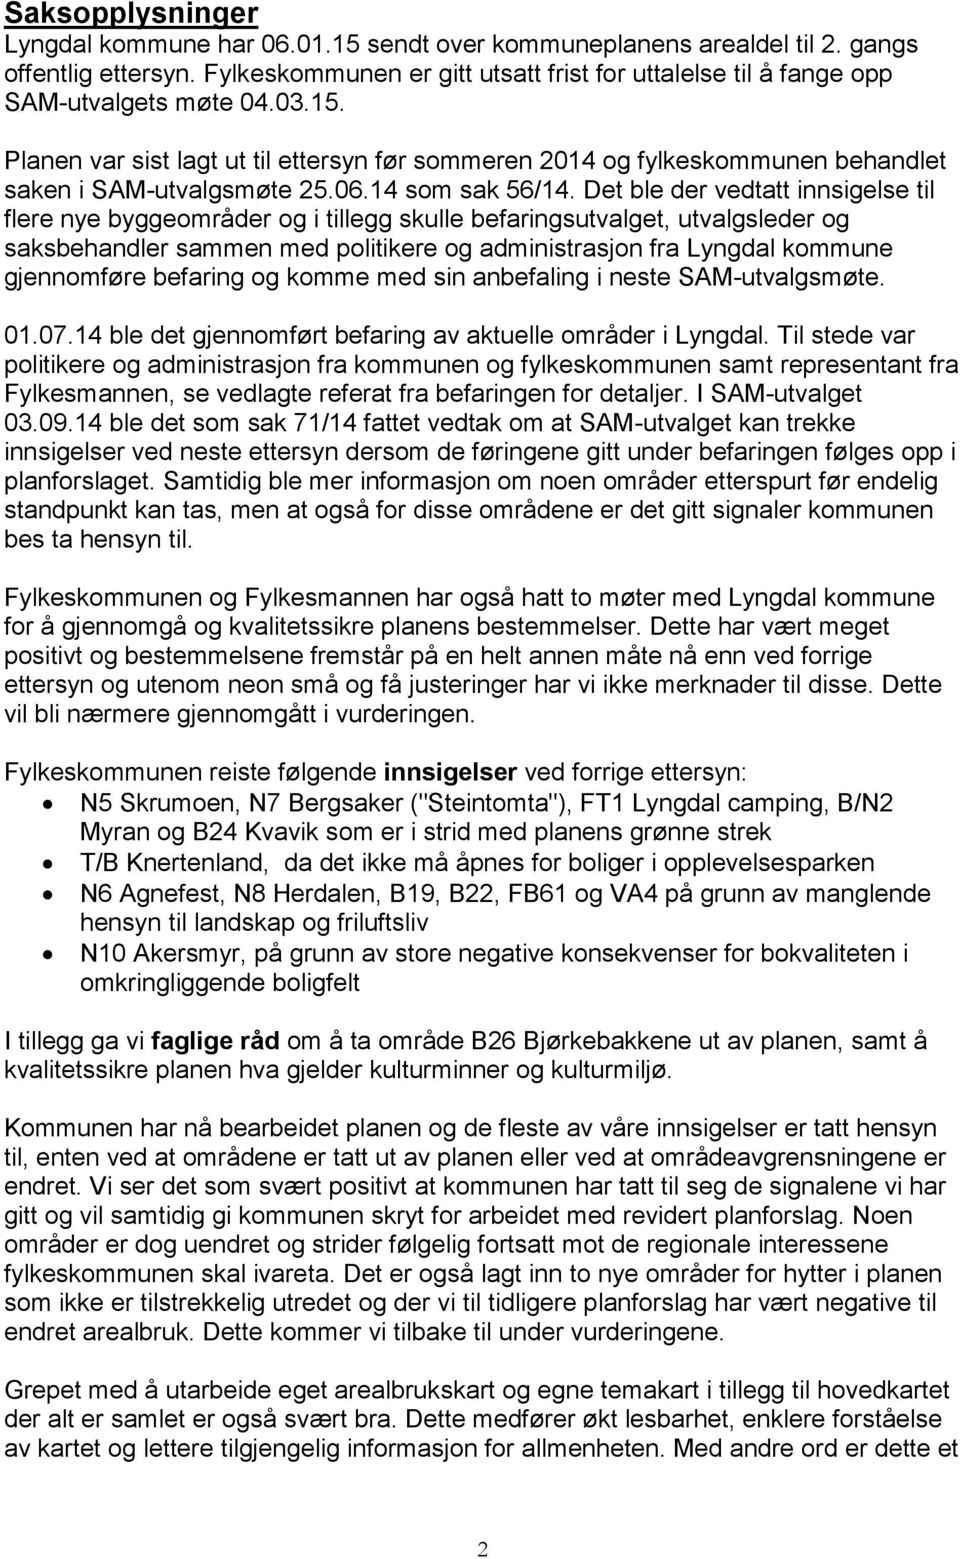 Planen var sist lagt ut til ettersyn før sommeren 2014 og fylkeskommunen behandlet saken i SAM-utvalgsmøte 25.06.14 som sak 56/14.